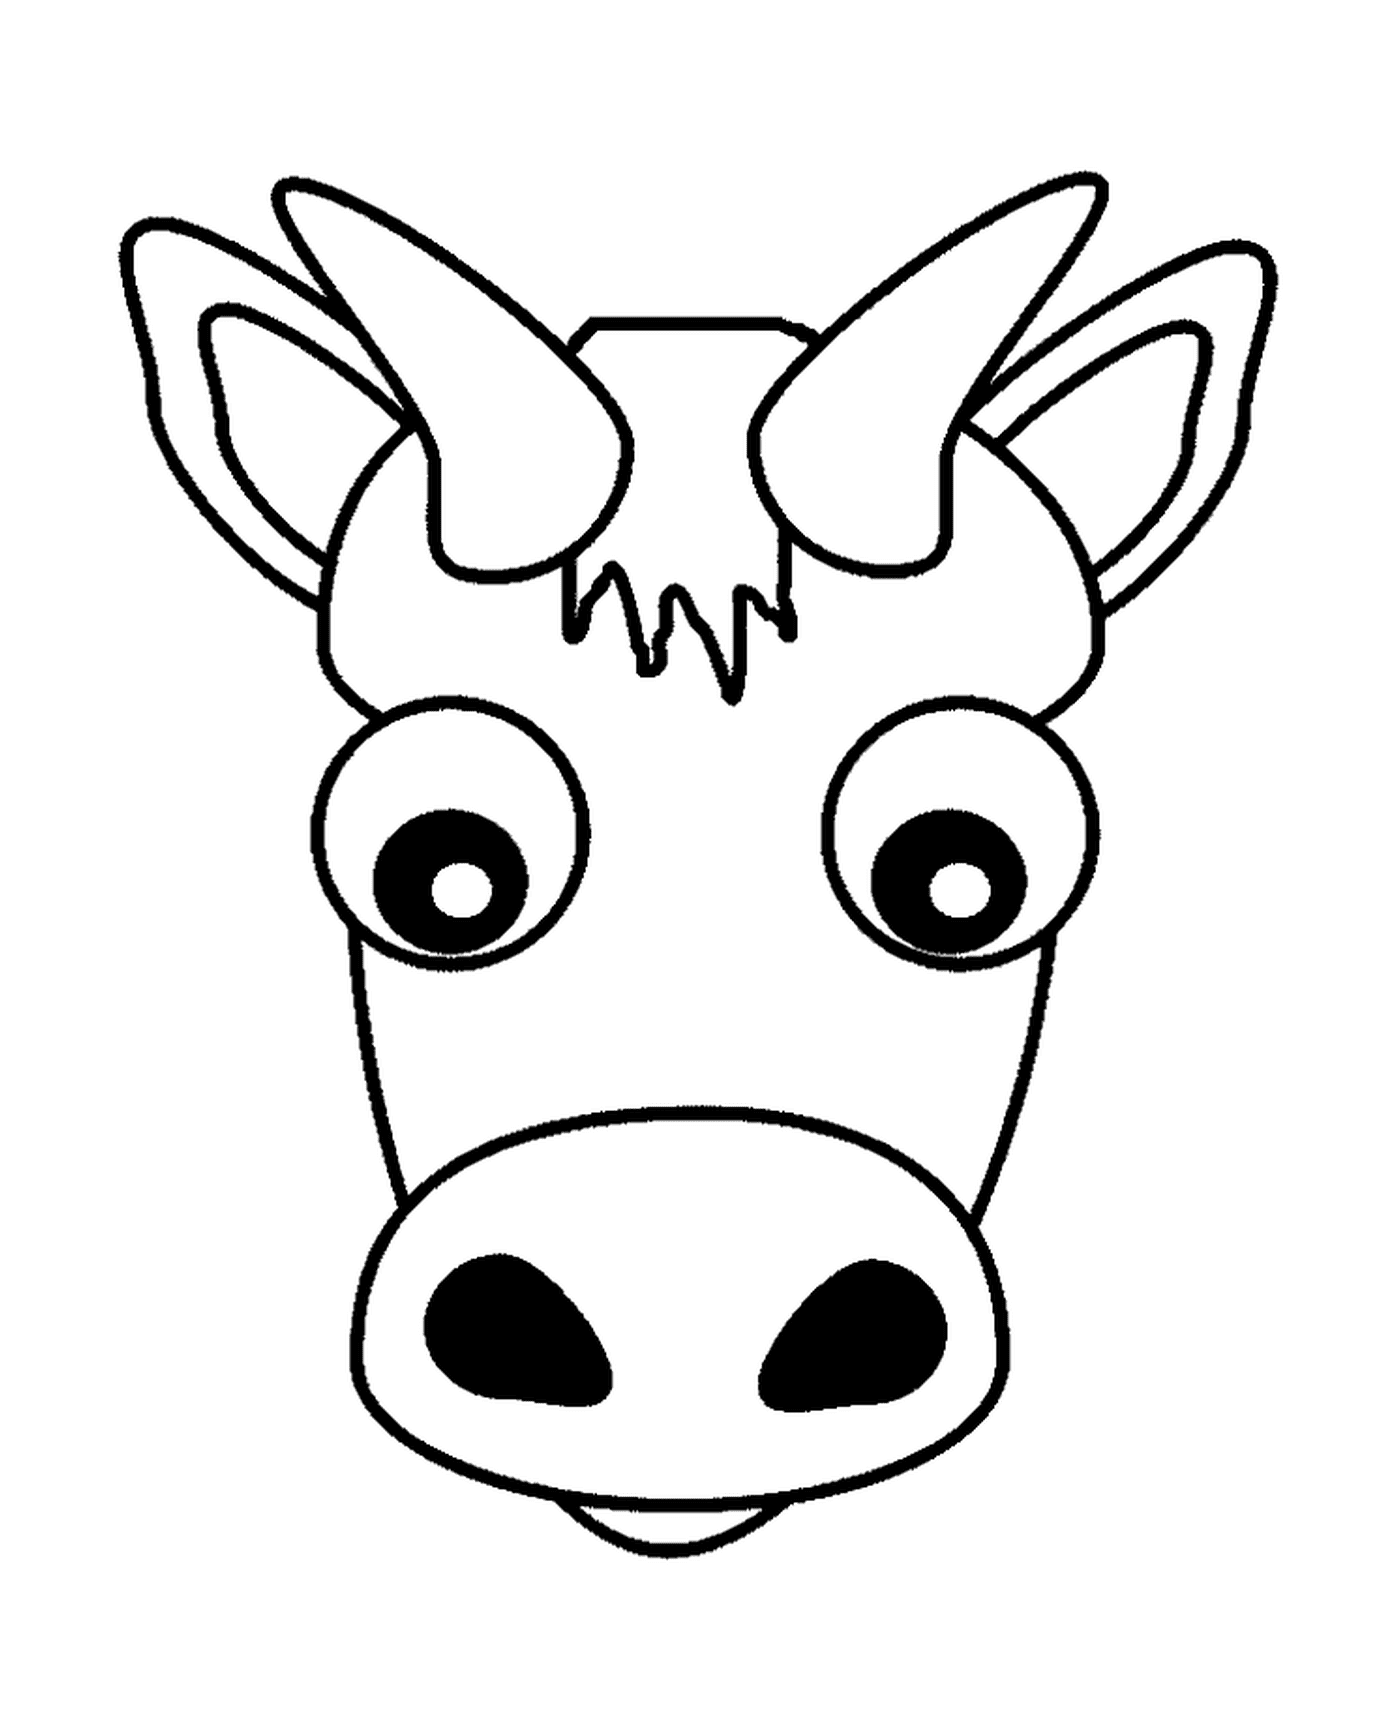  Un animal con un rostro dibujado 